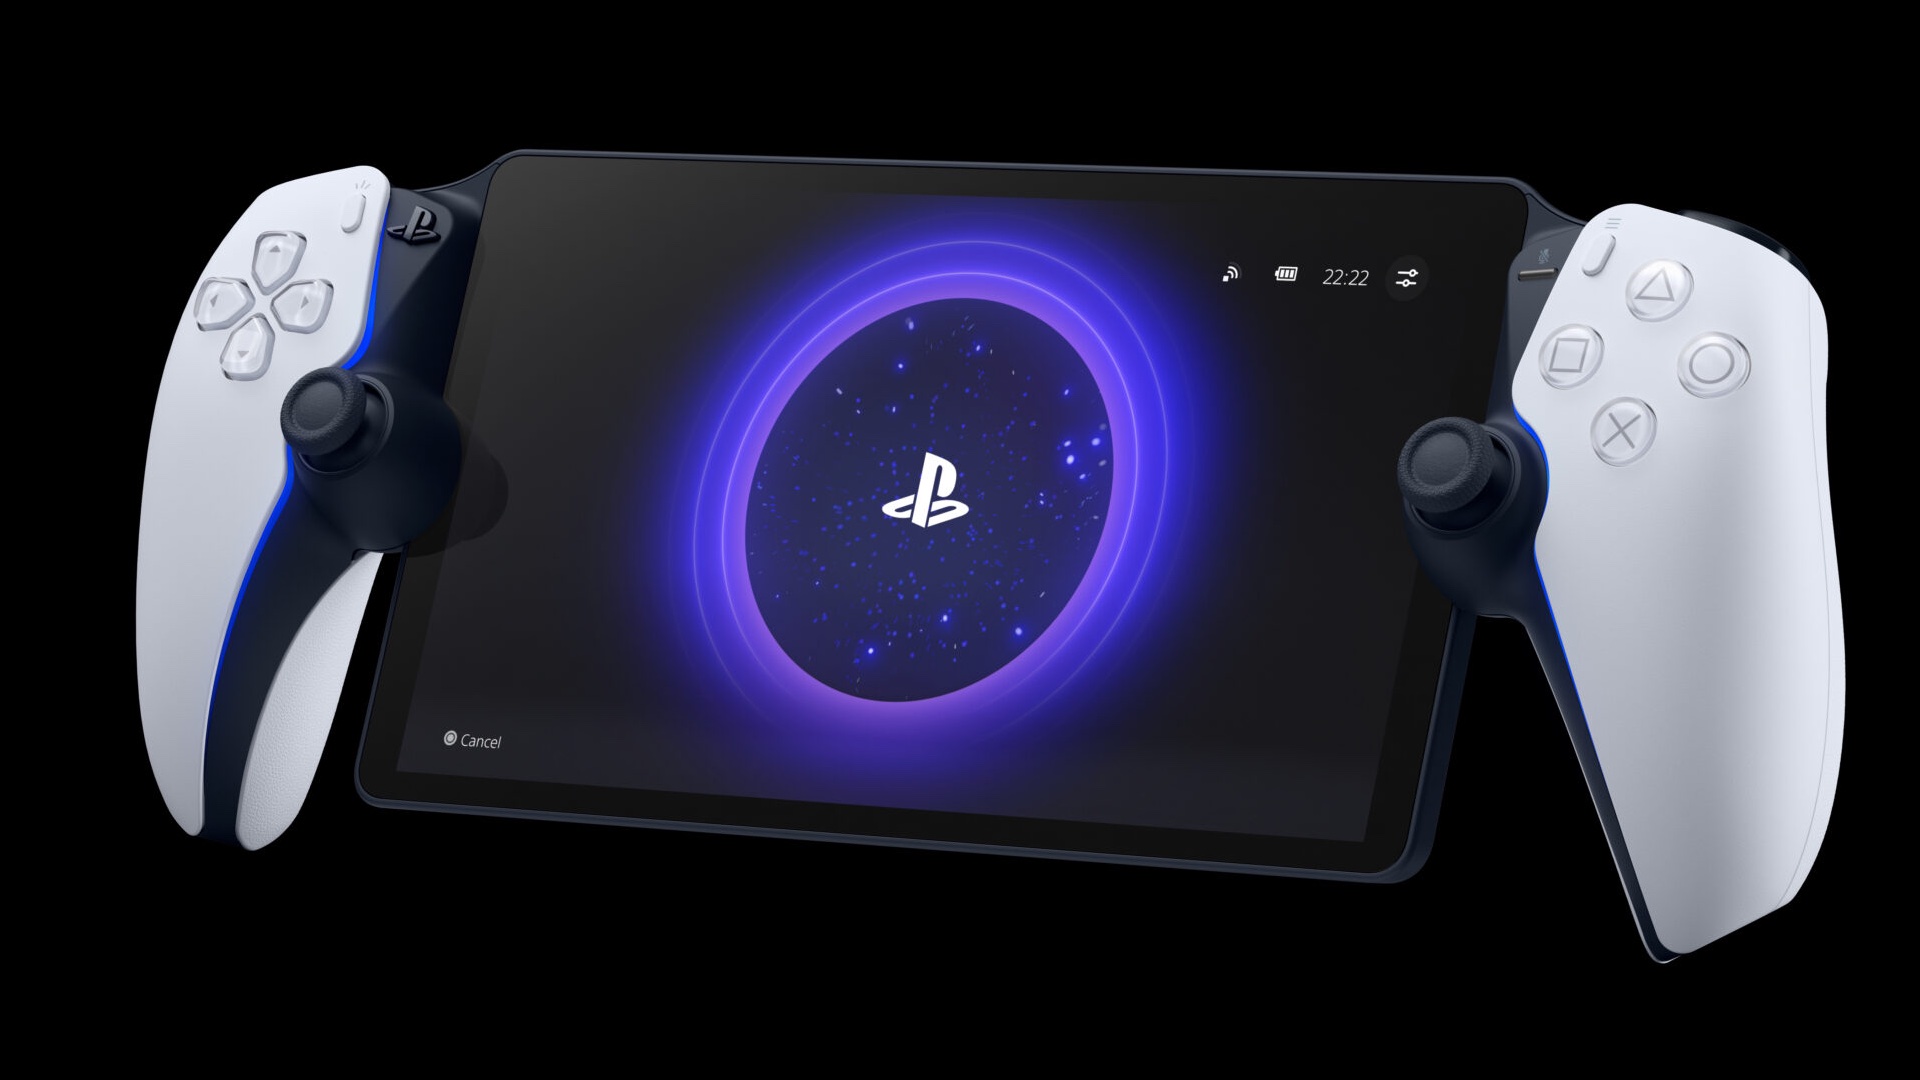 Lecteur à distance Sony PlayStation Portal pour console PS5 – GAME PRO